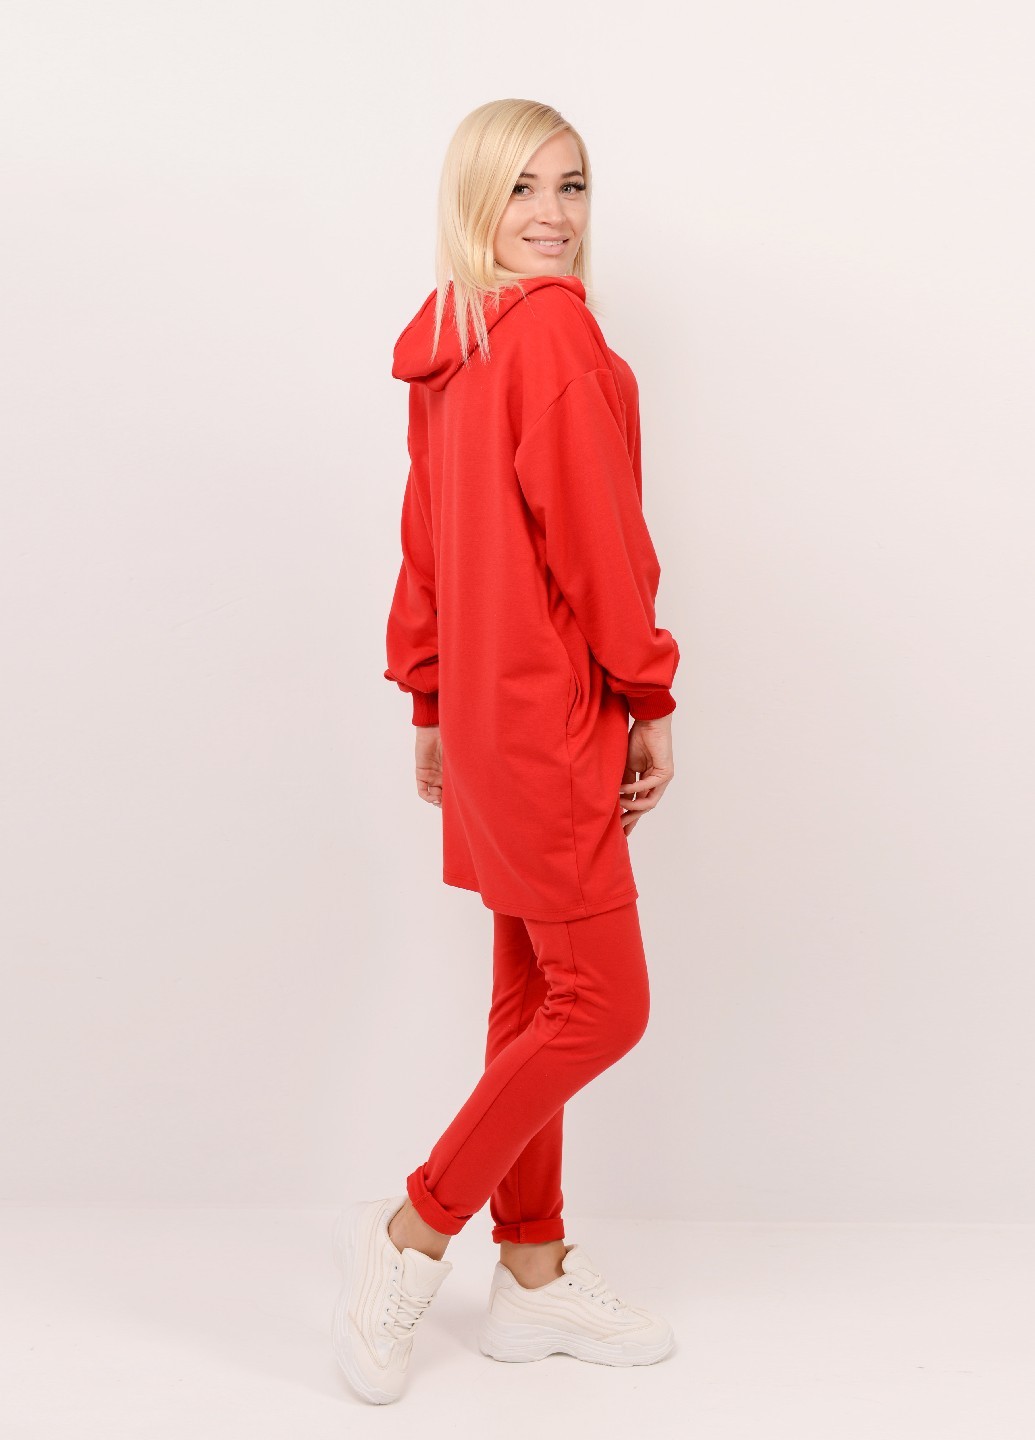 Женский спортивный костюм с удлиненной кофтой красный 02489 цена